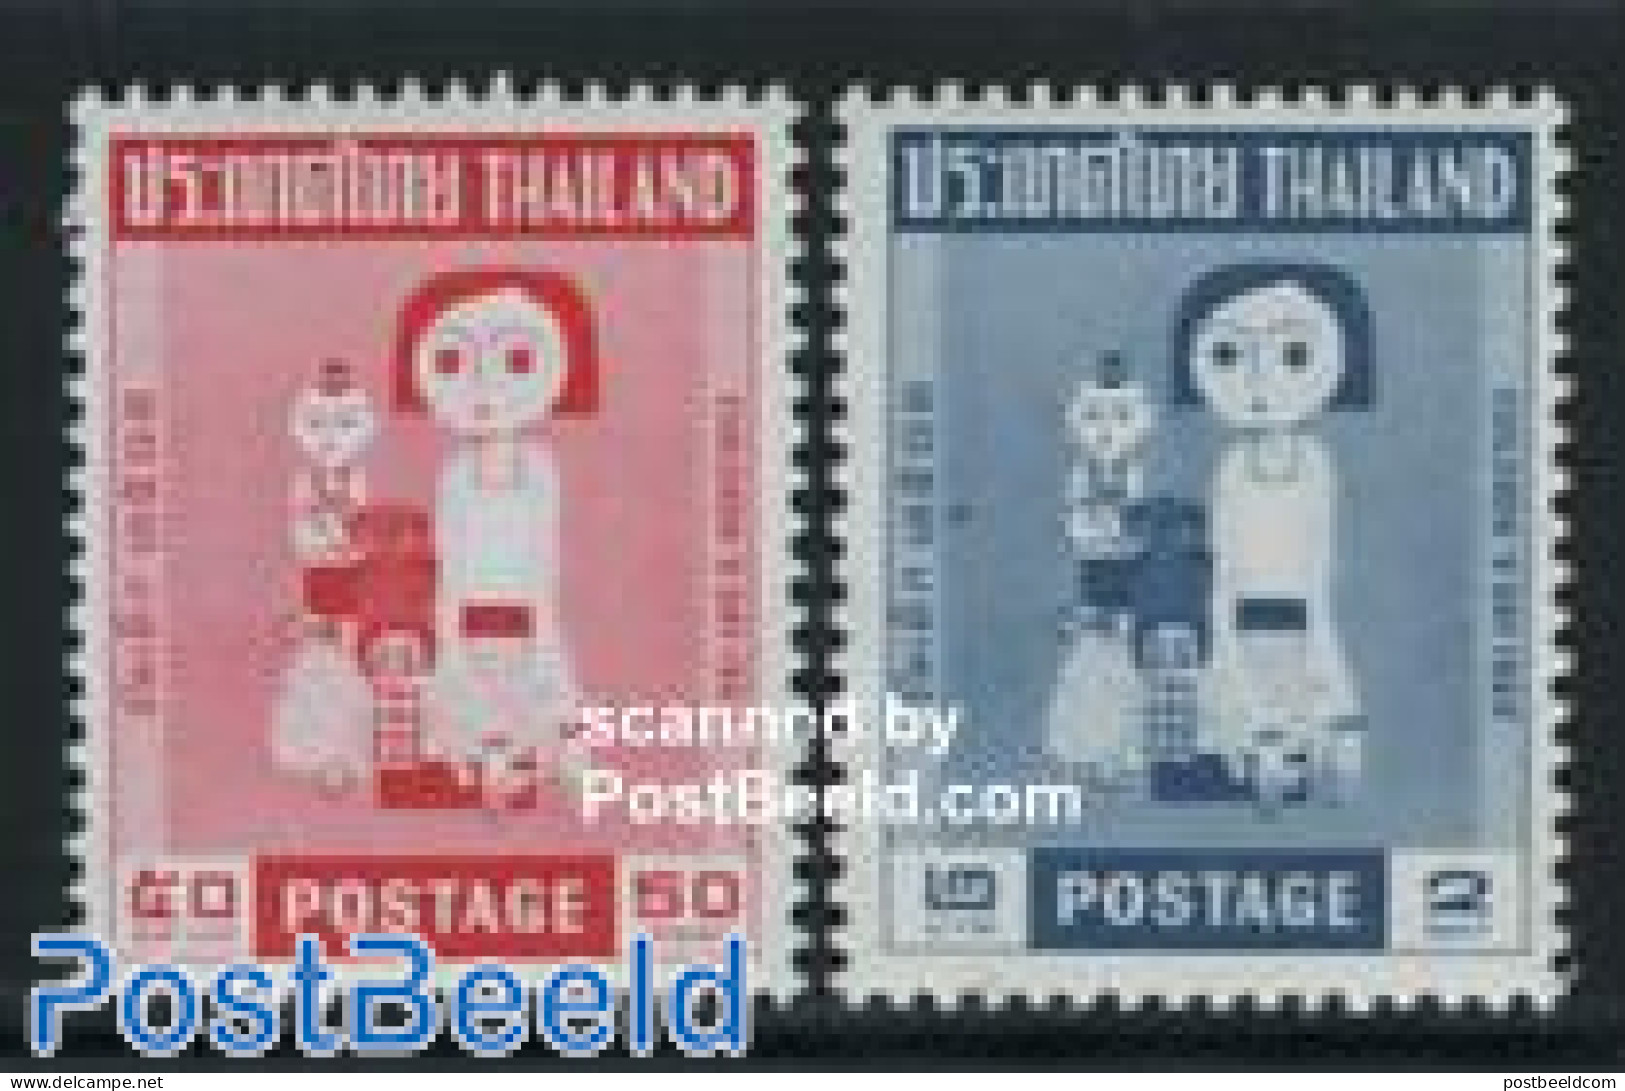 Thailand 1963 Children Day 2v, Mint NH - Tailandia